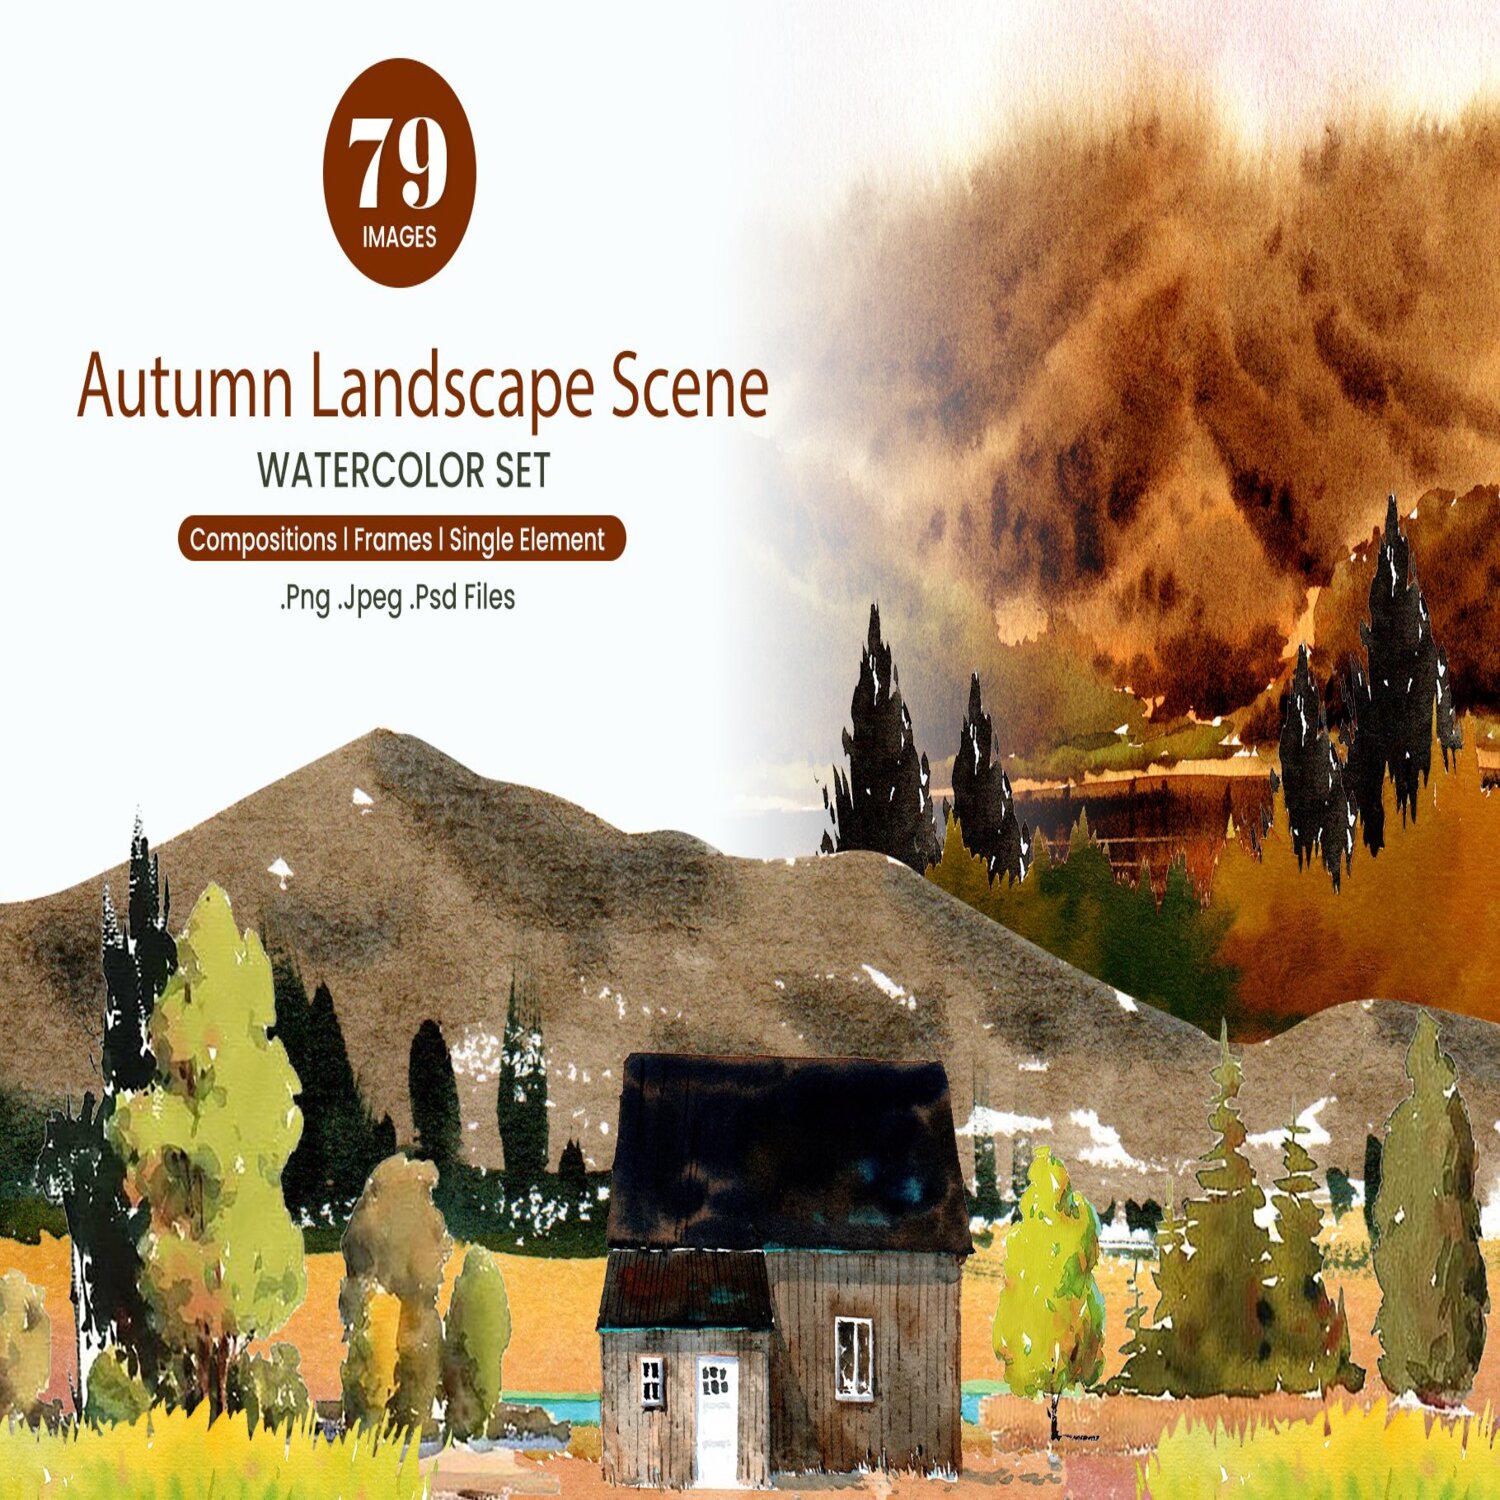 Autumn Landscape Scene Watercolor cover.